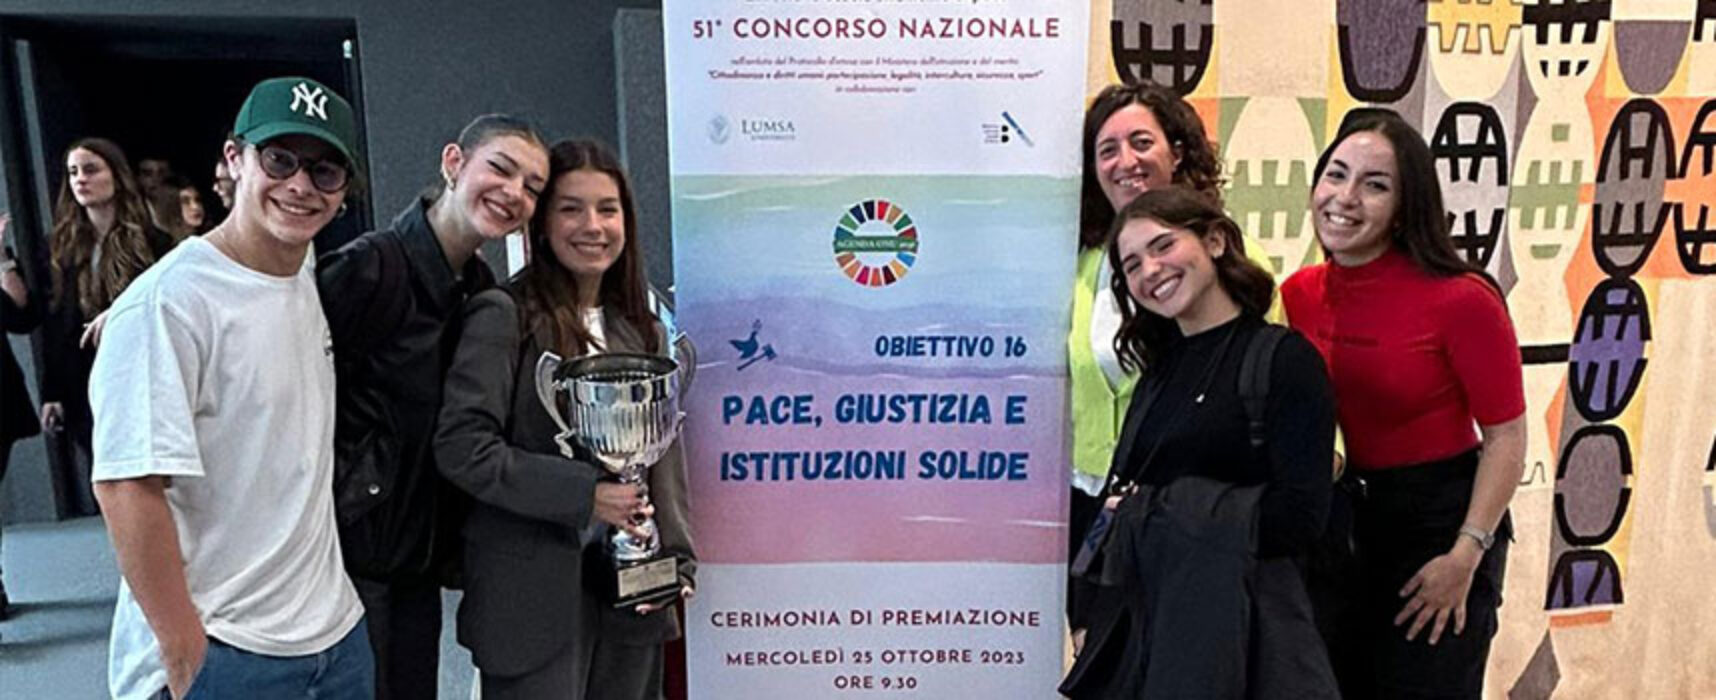 Liceo “Da Vinci” premiato a Roma per il cortometraggio “L’inganno in un passo”